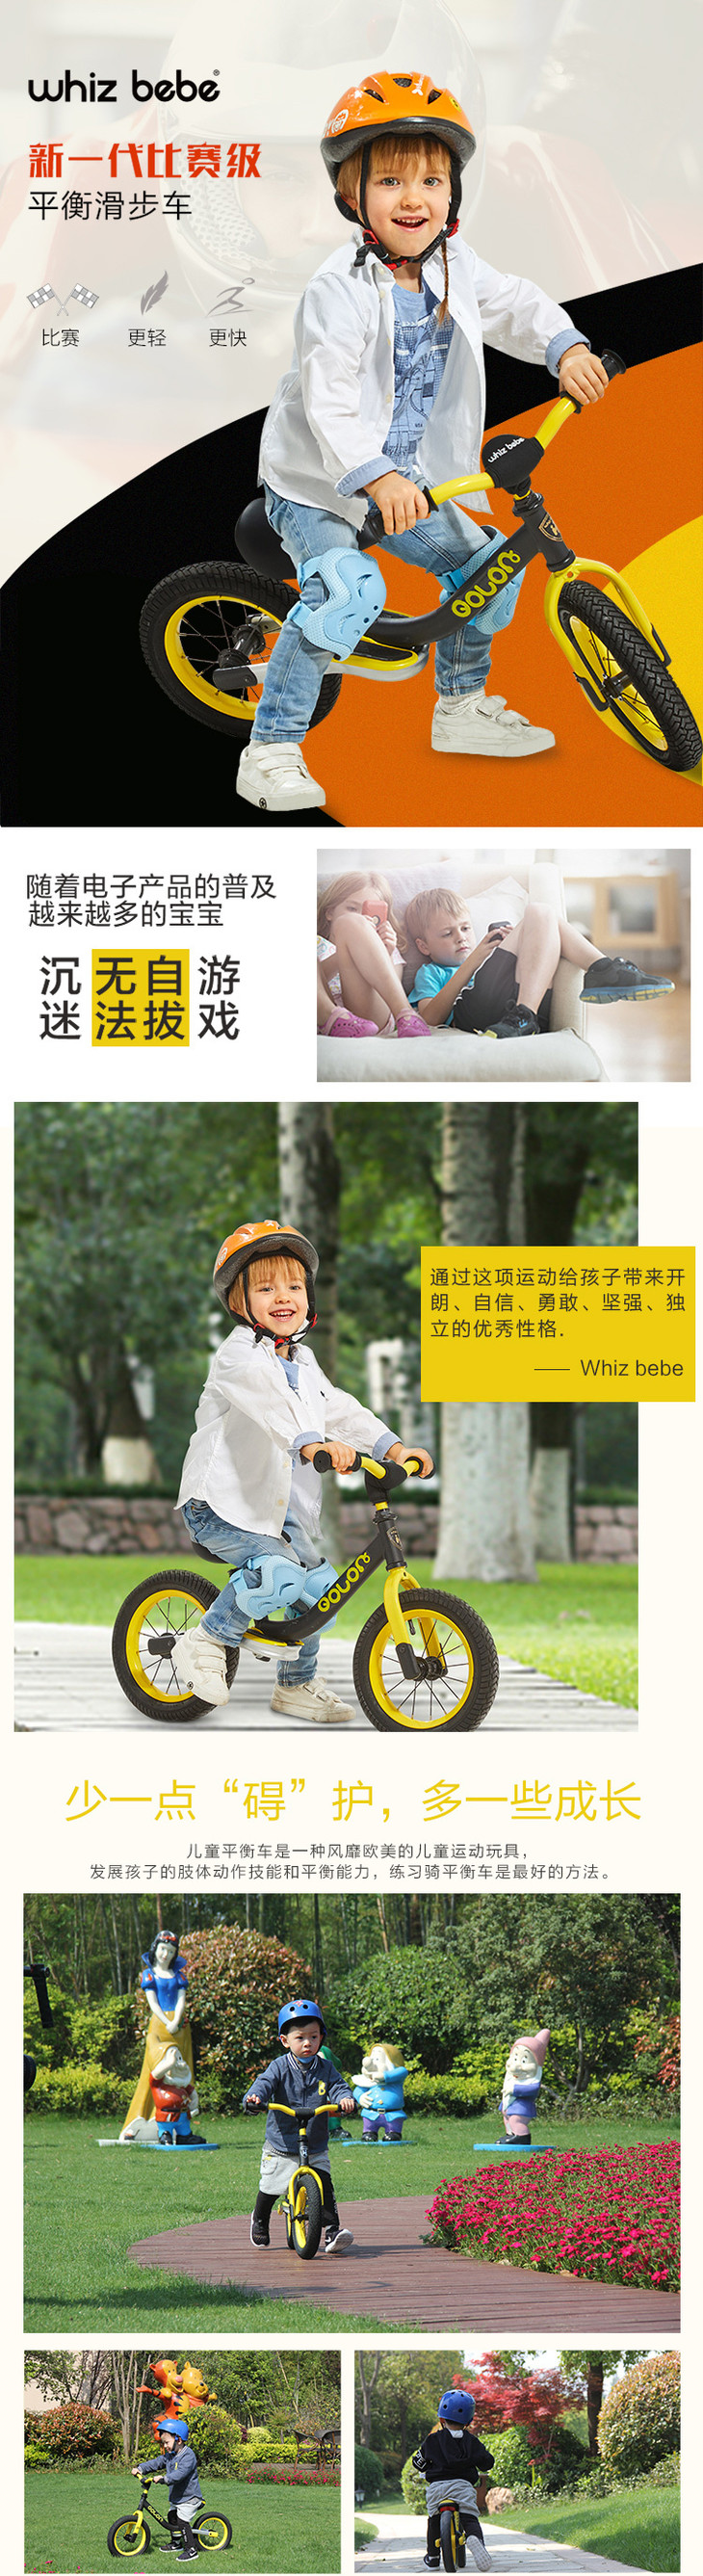 品牌:荟智 产地:中国 品名:荟智 儿童平衡滑步车hp1208 黄黑